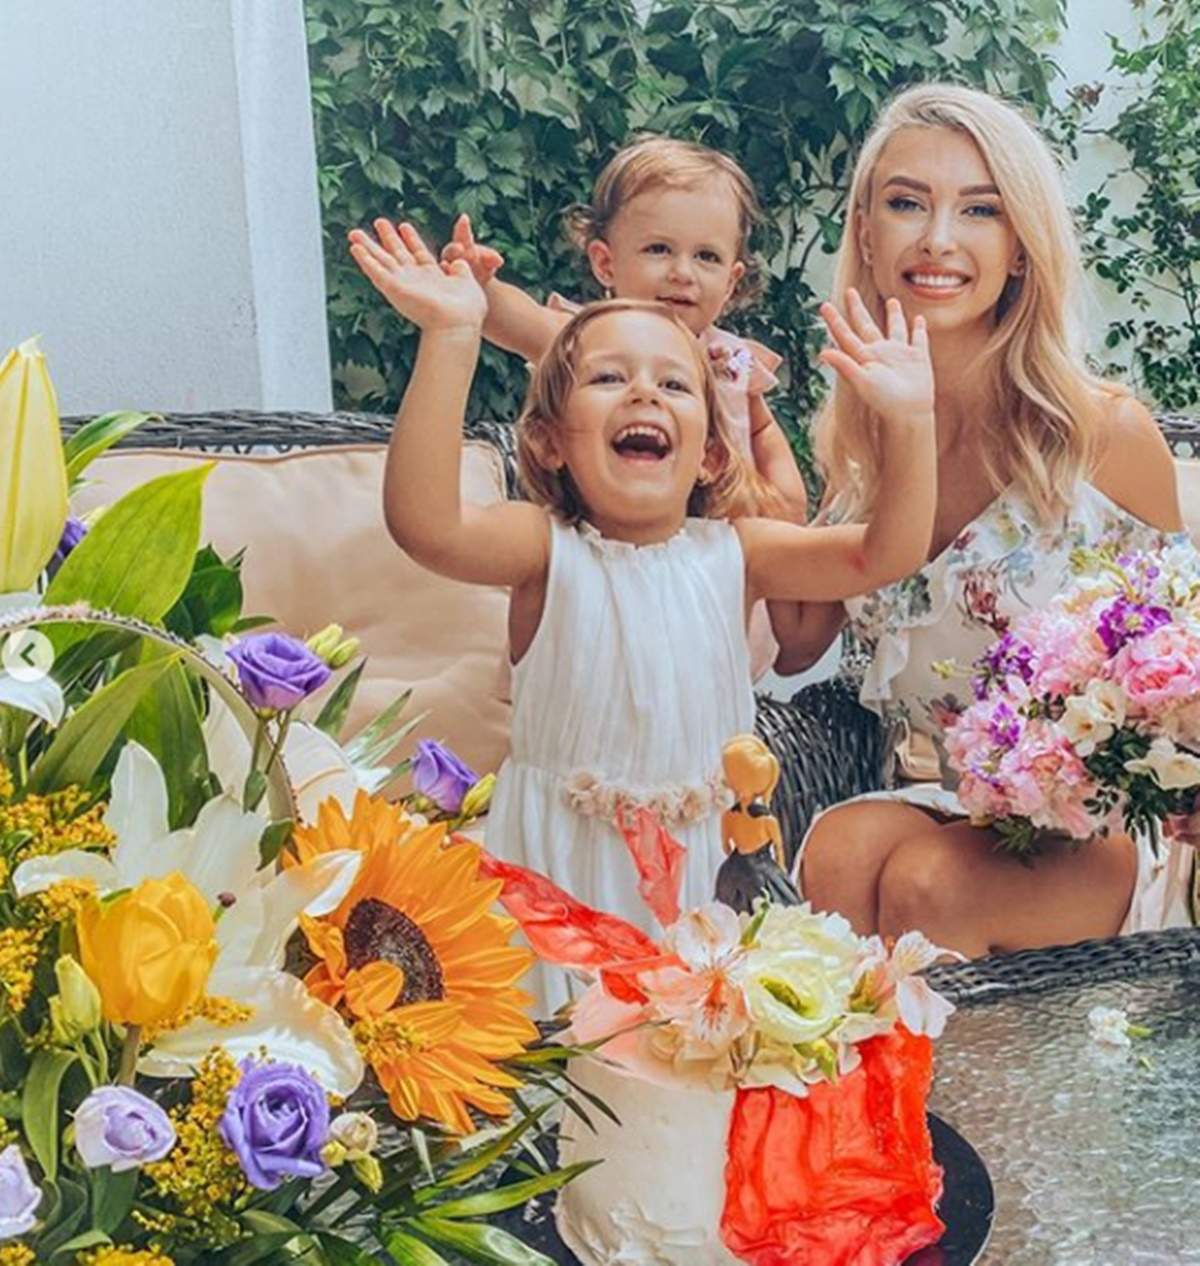 Un an cât zece! Andreea Bălan a trecut prin cele mai grele momente, însă astăzi zâmbește din nou! Cele două fetițe au surprins-o de ziua sa de naștere. ”De câte ori am luat-o de la capăt”